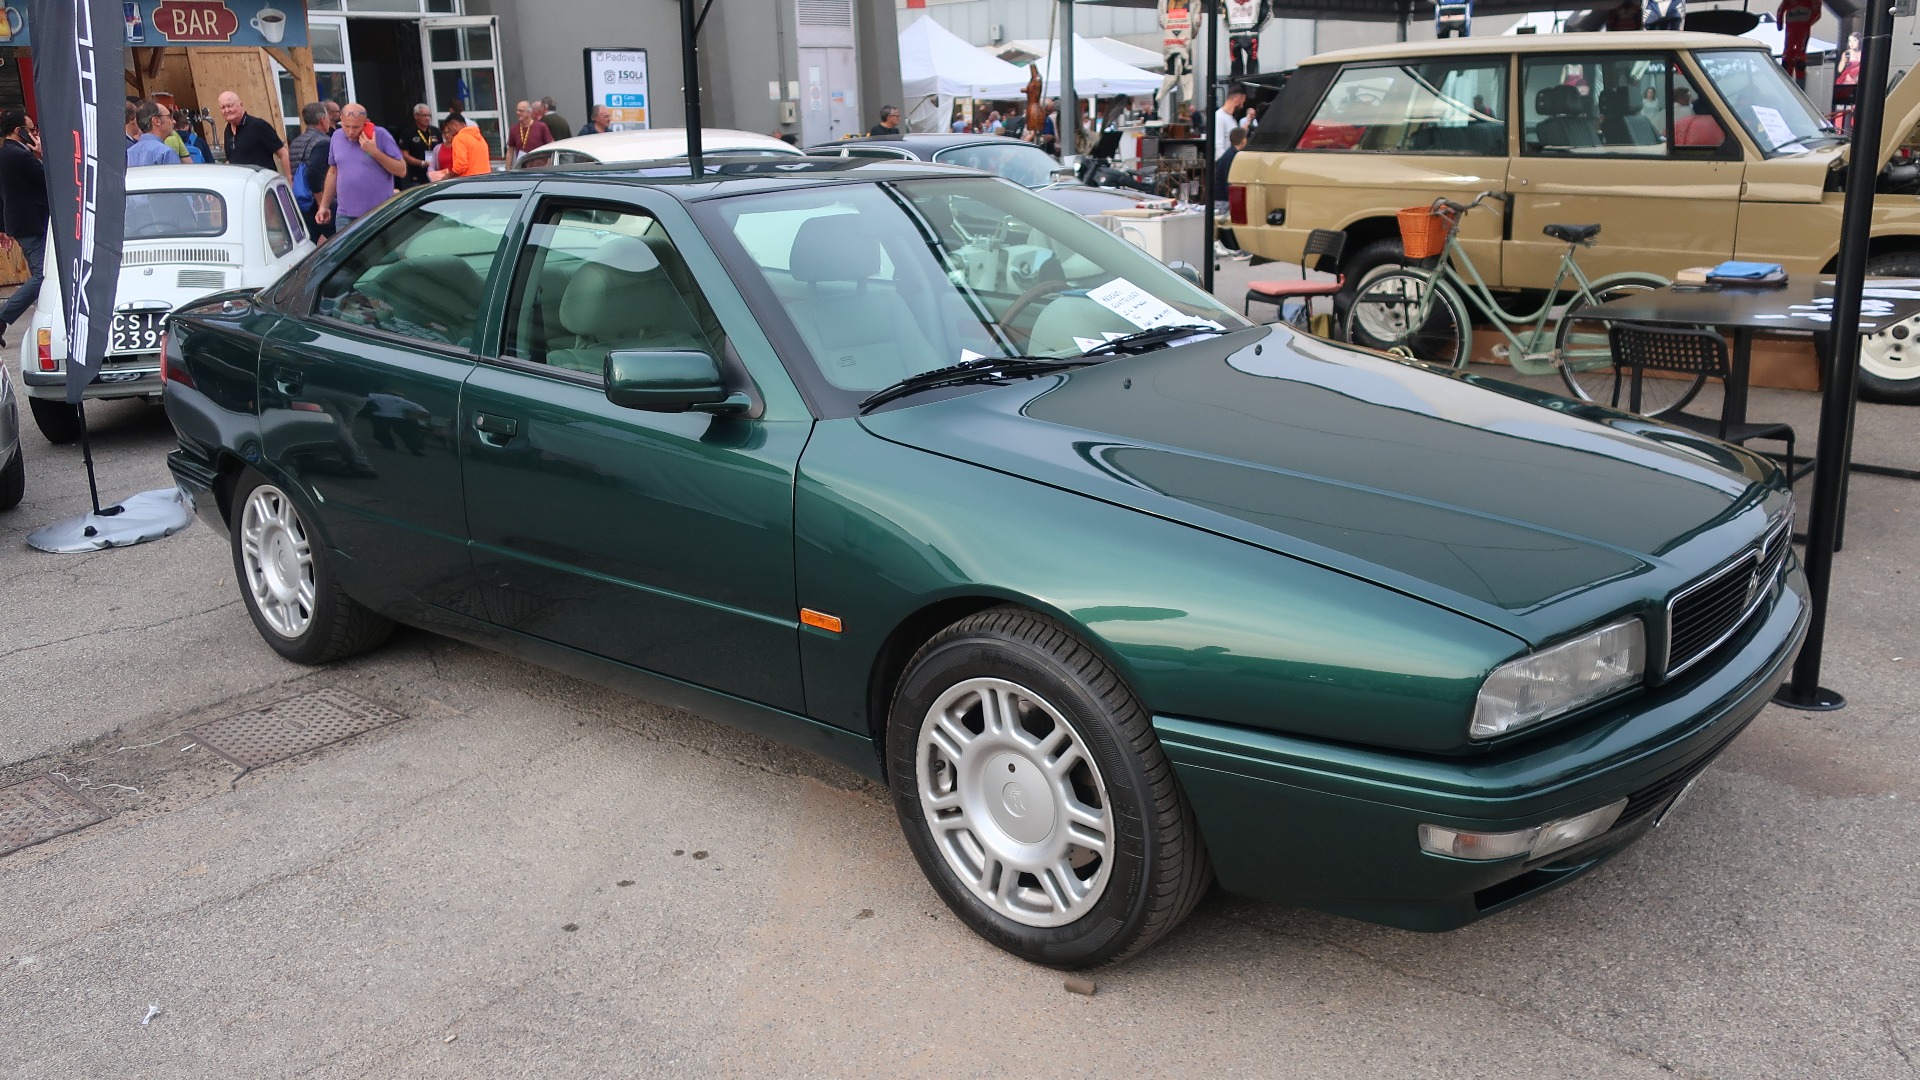 1995 Maserati Quattroporte IV med 2-liters V6 og 110.000 km på telleren til salgs for 15.500 Euro.